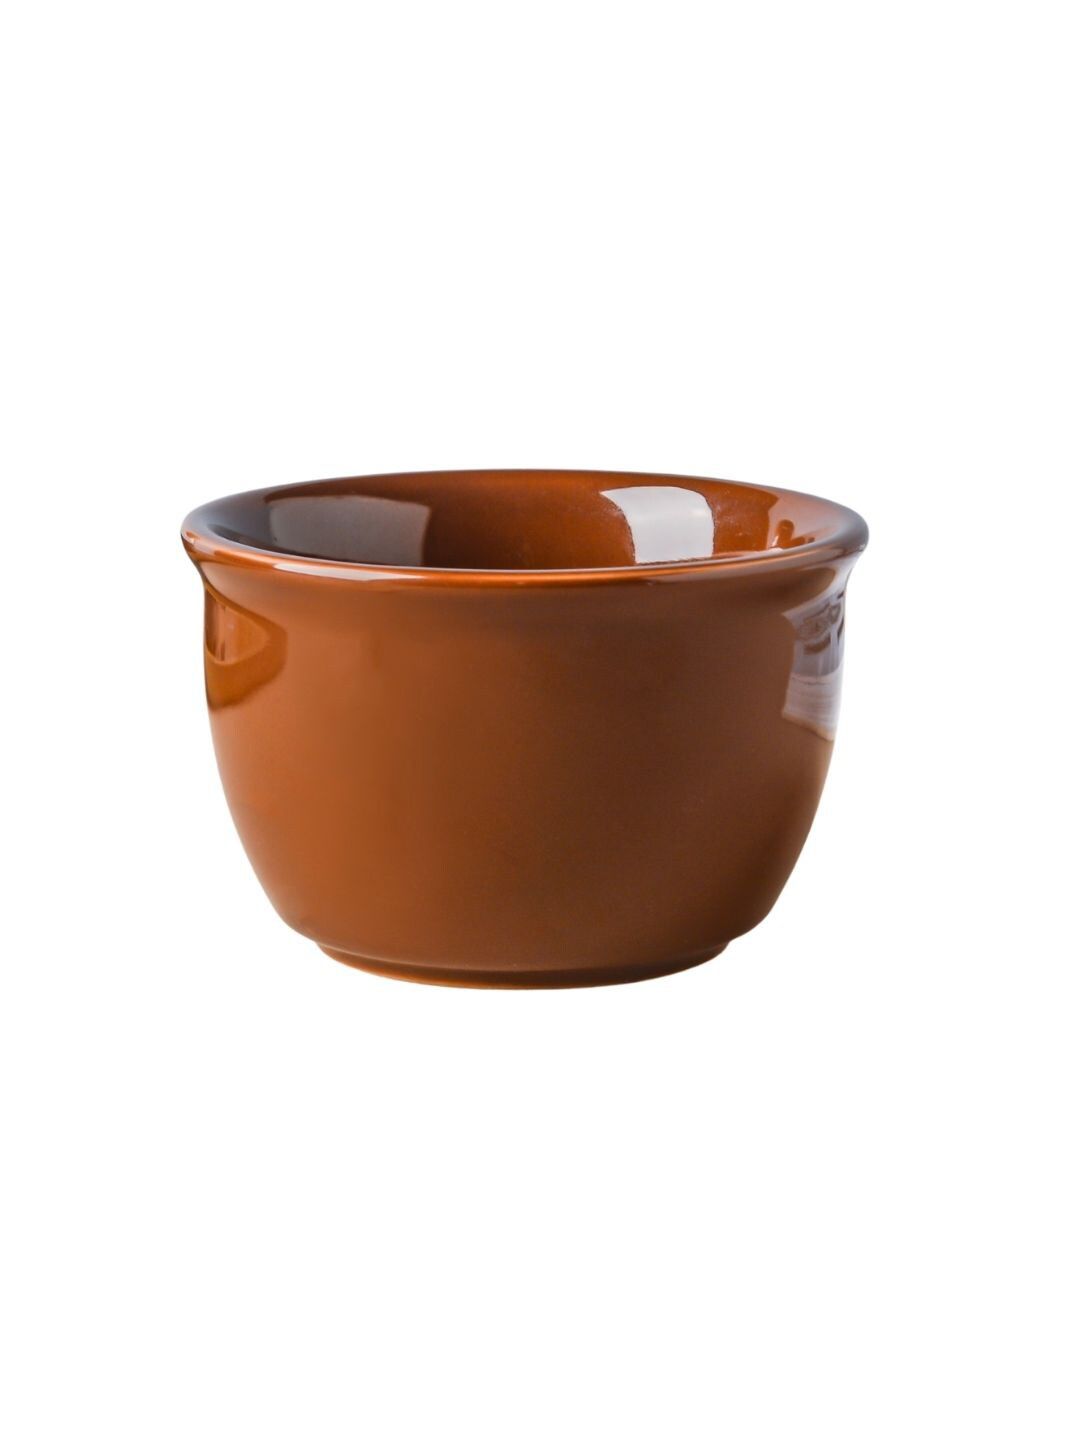 Nestasia Brown Ceramic Matte Snack Bowl 300 ml Price in India